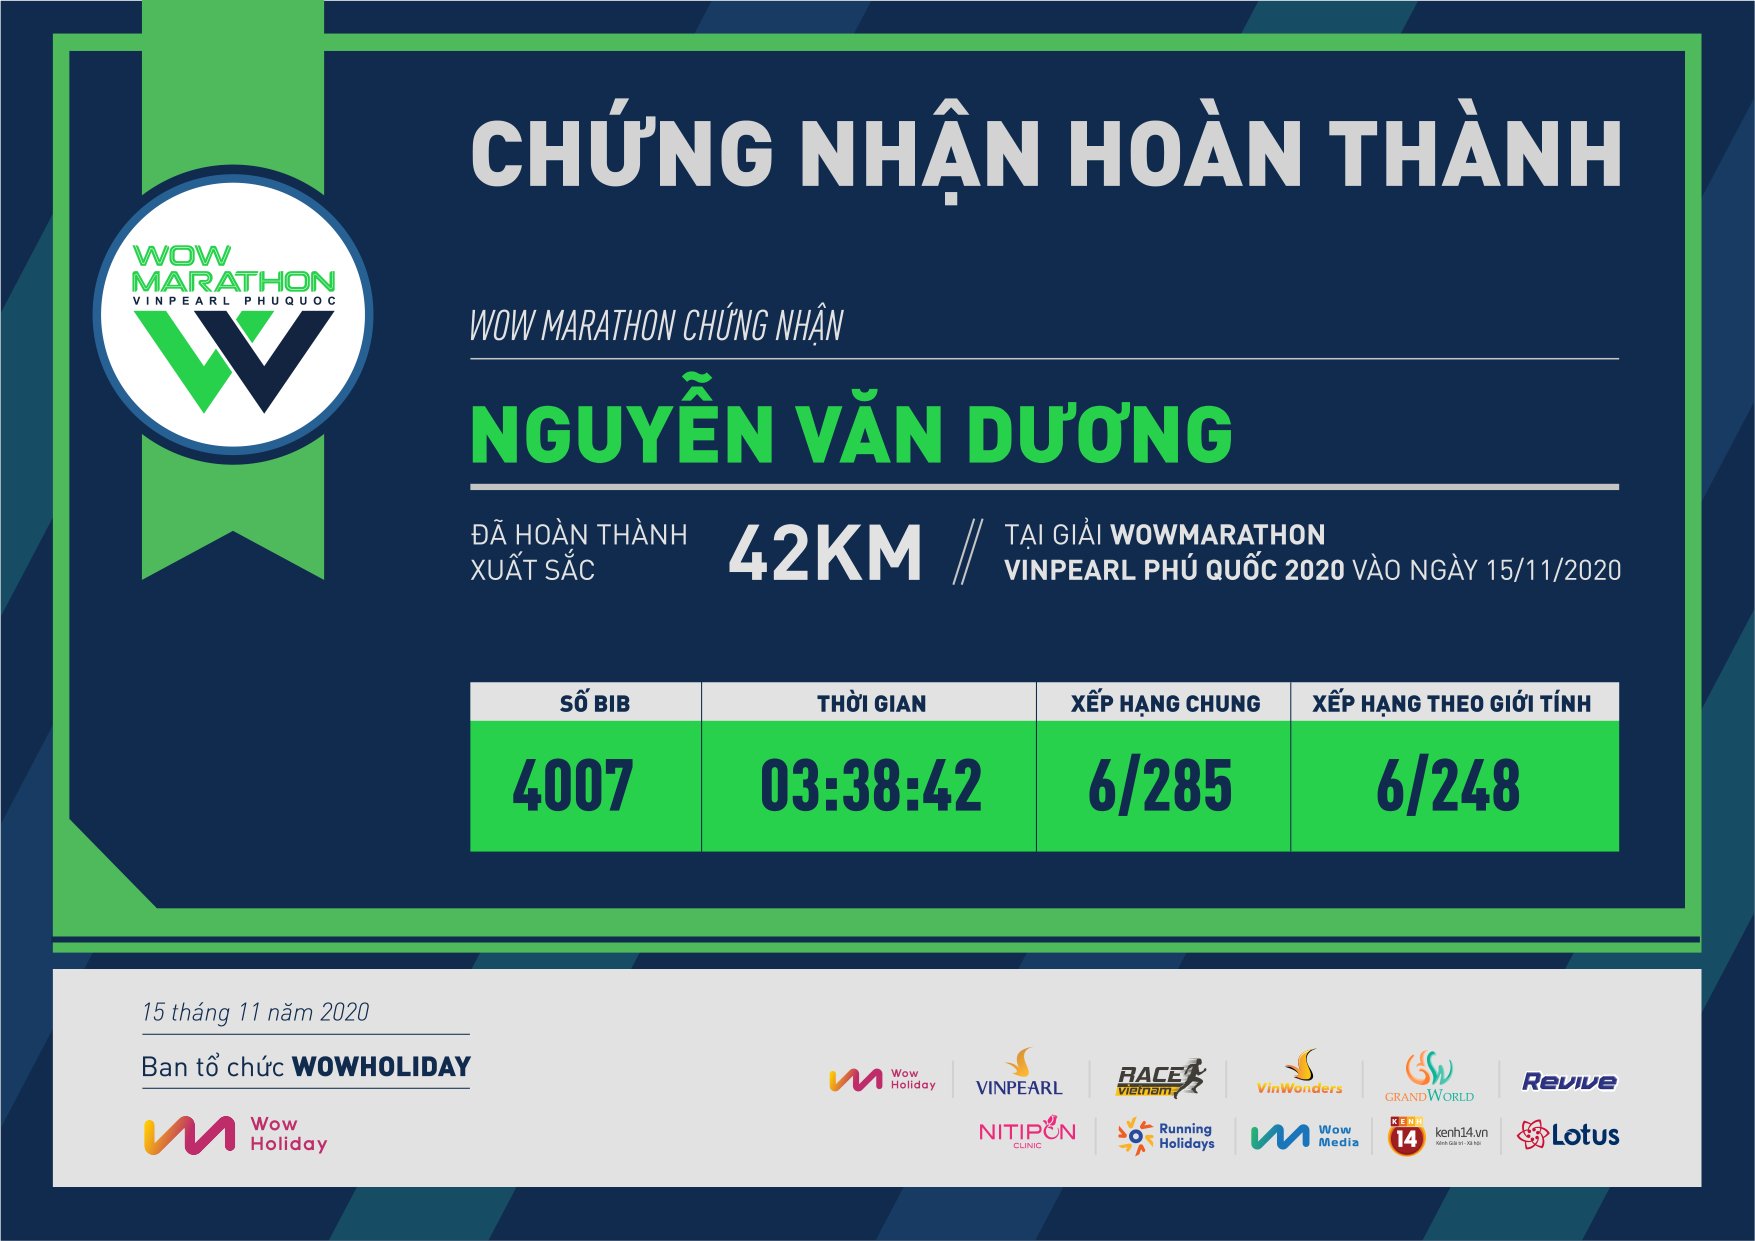 4007 - Nguyễn Văn Dương